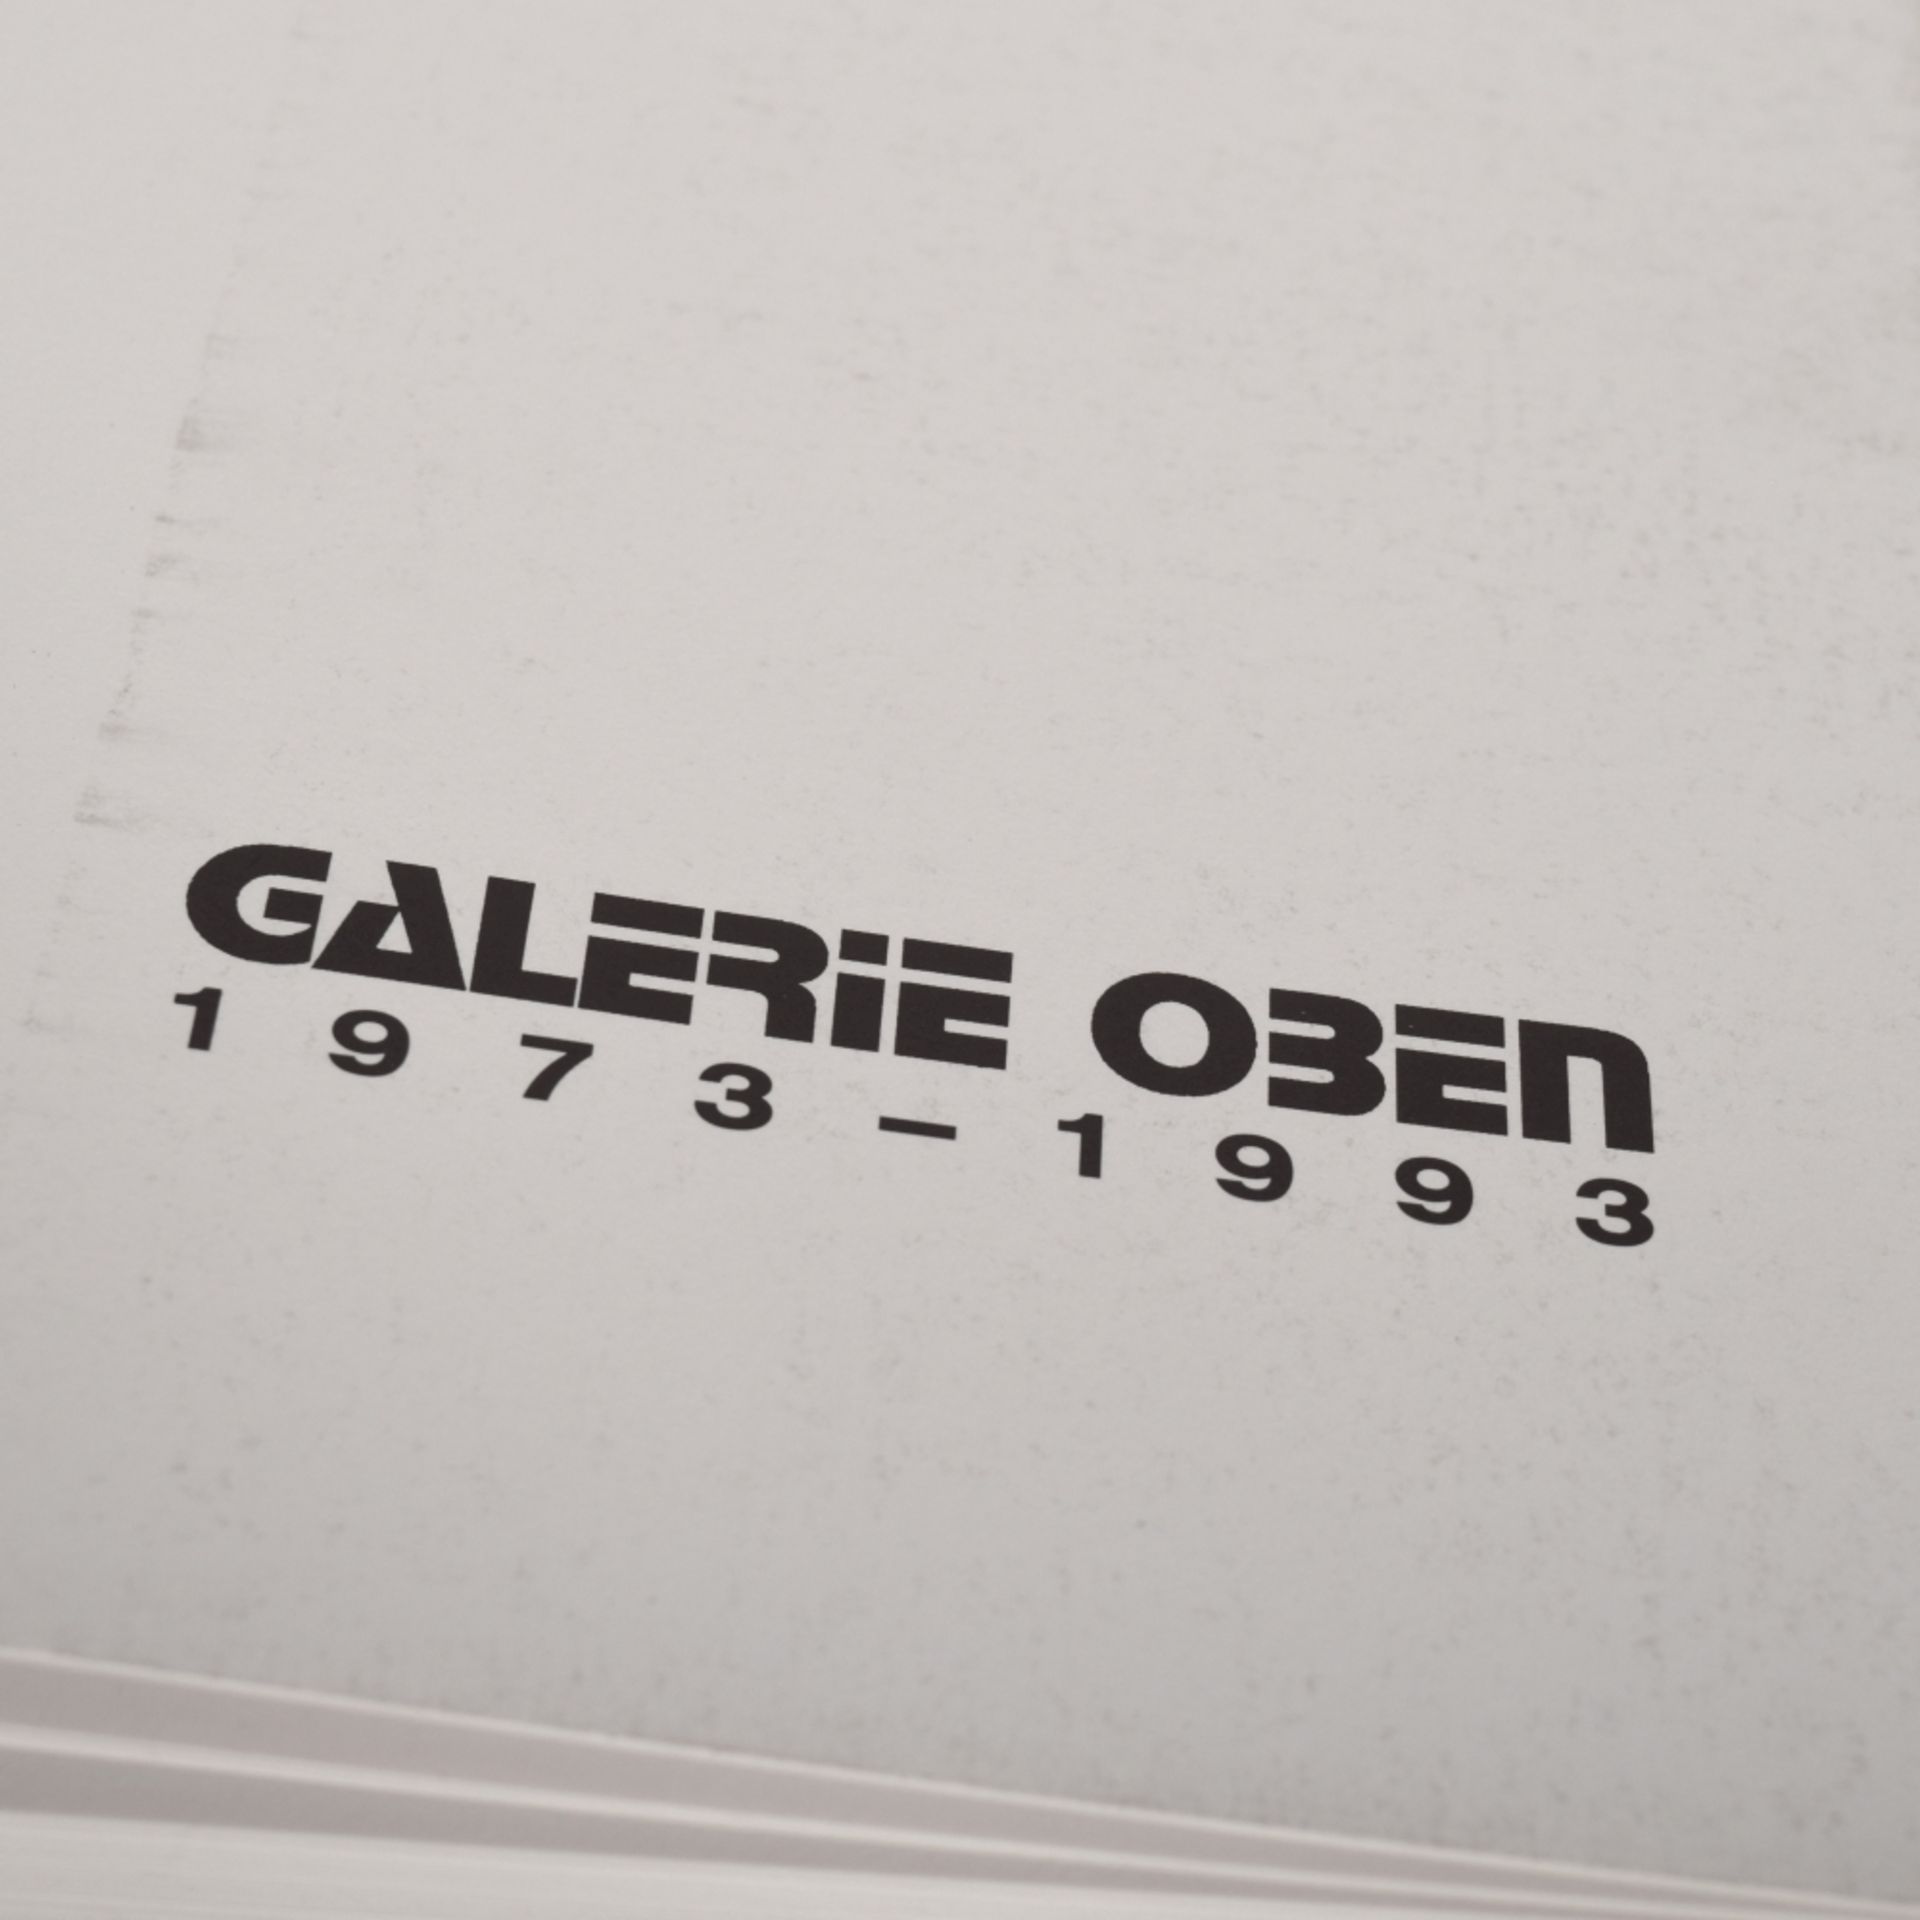 Katalog GALERIE OBEN 1973-1993 - Image 2 of 4